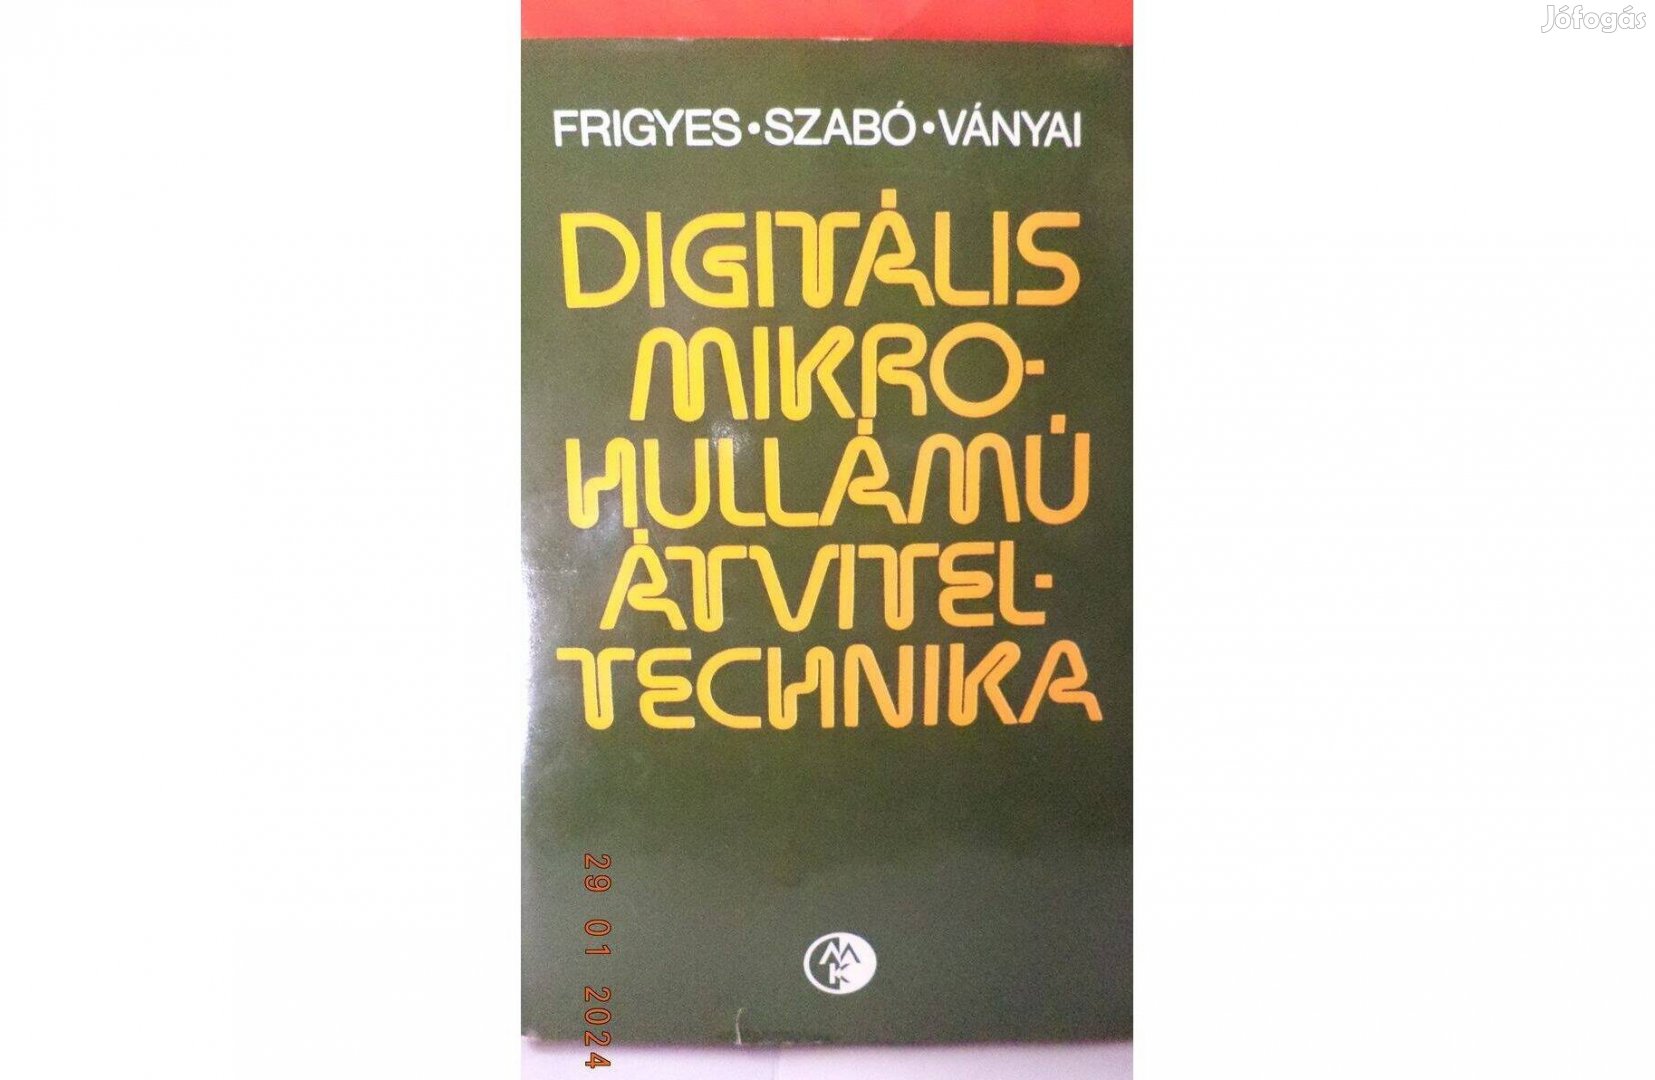 Frigyes - Szabó - Ványai: Digitális mikrohullámú átviteltechnika